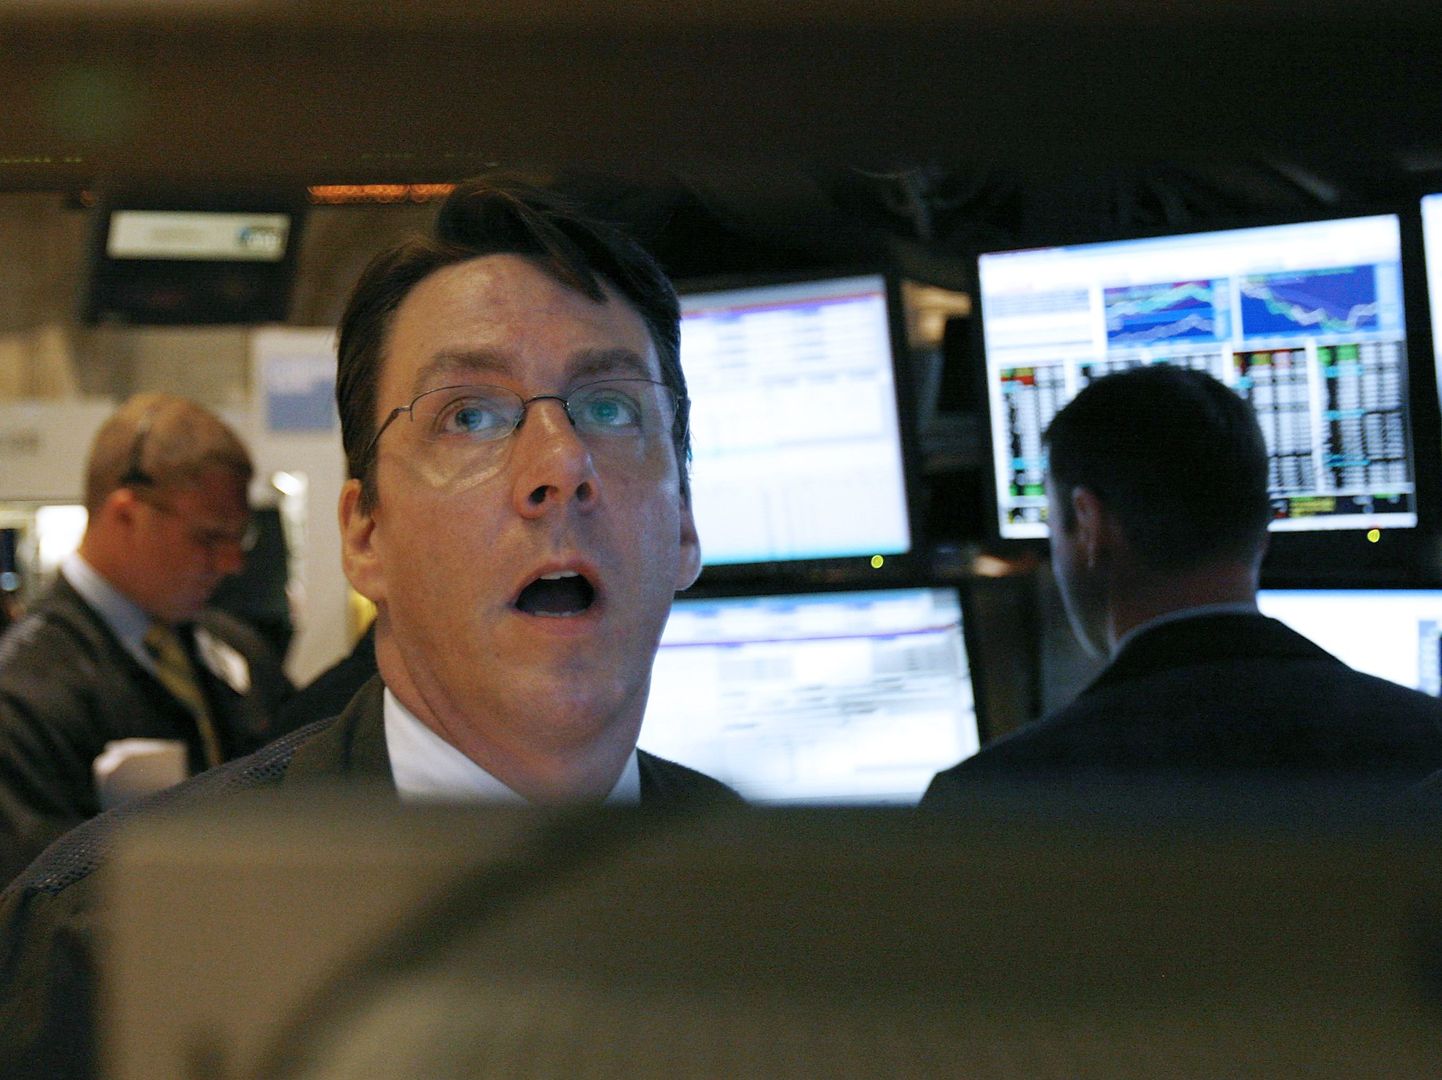 Arhiivifoto: NYSE aktsiamaaklerid 15. septembril 2008, kui Lehman Brothers pankrotiavalduse esitas.